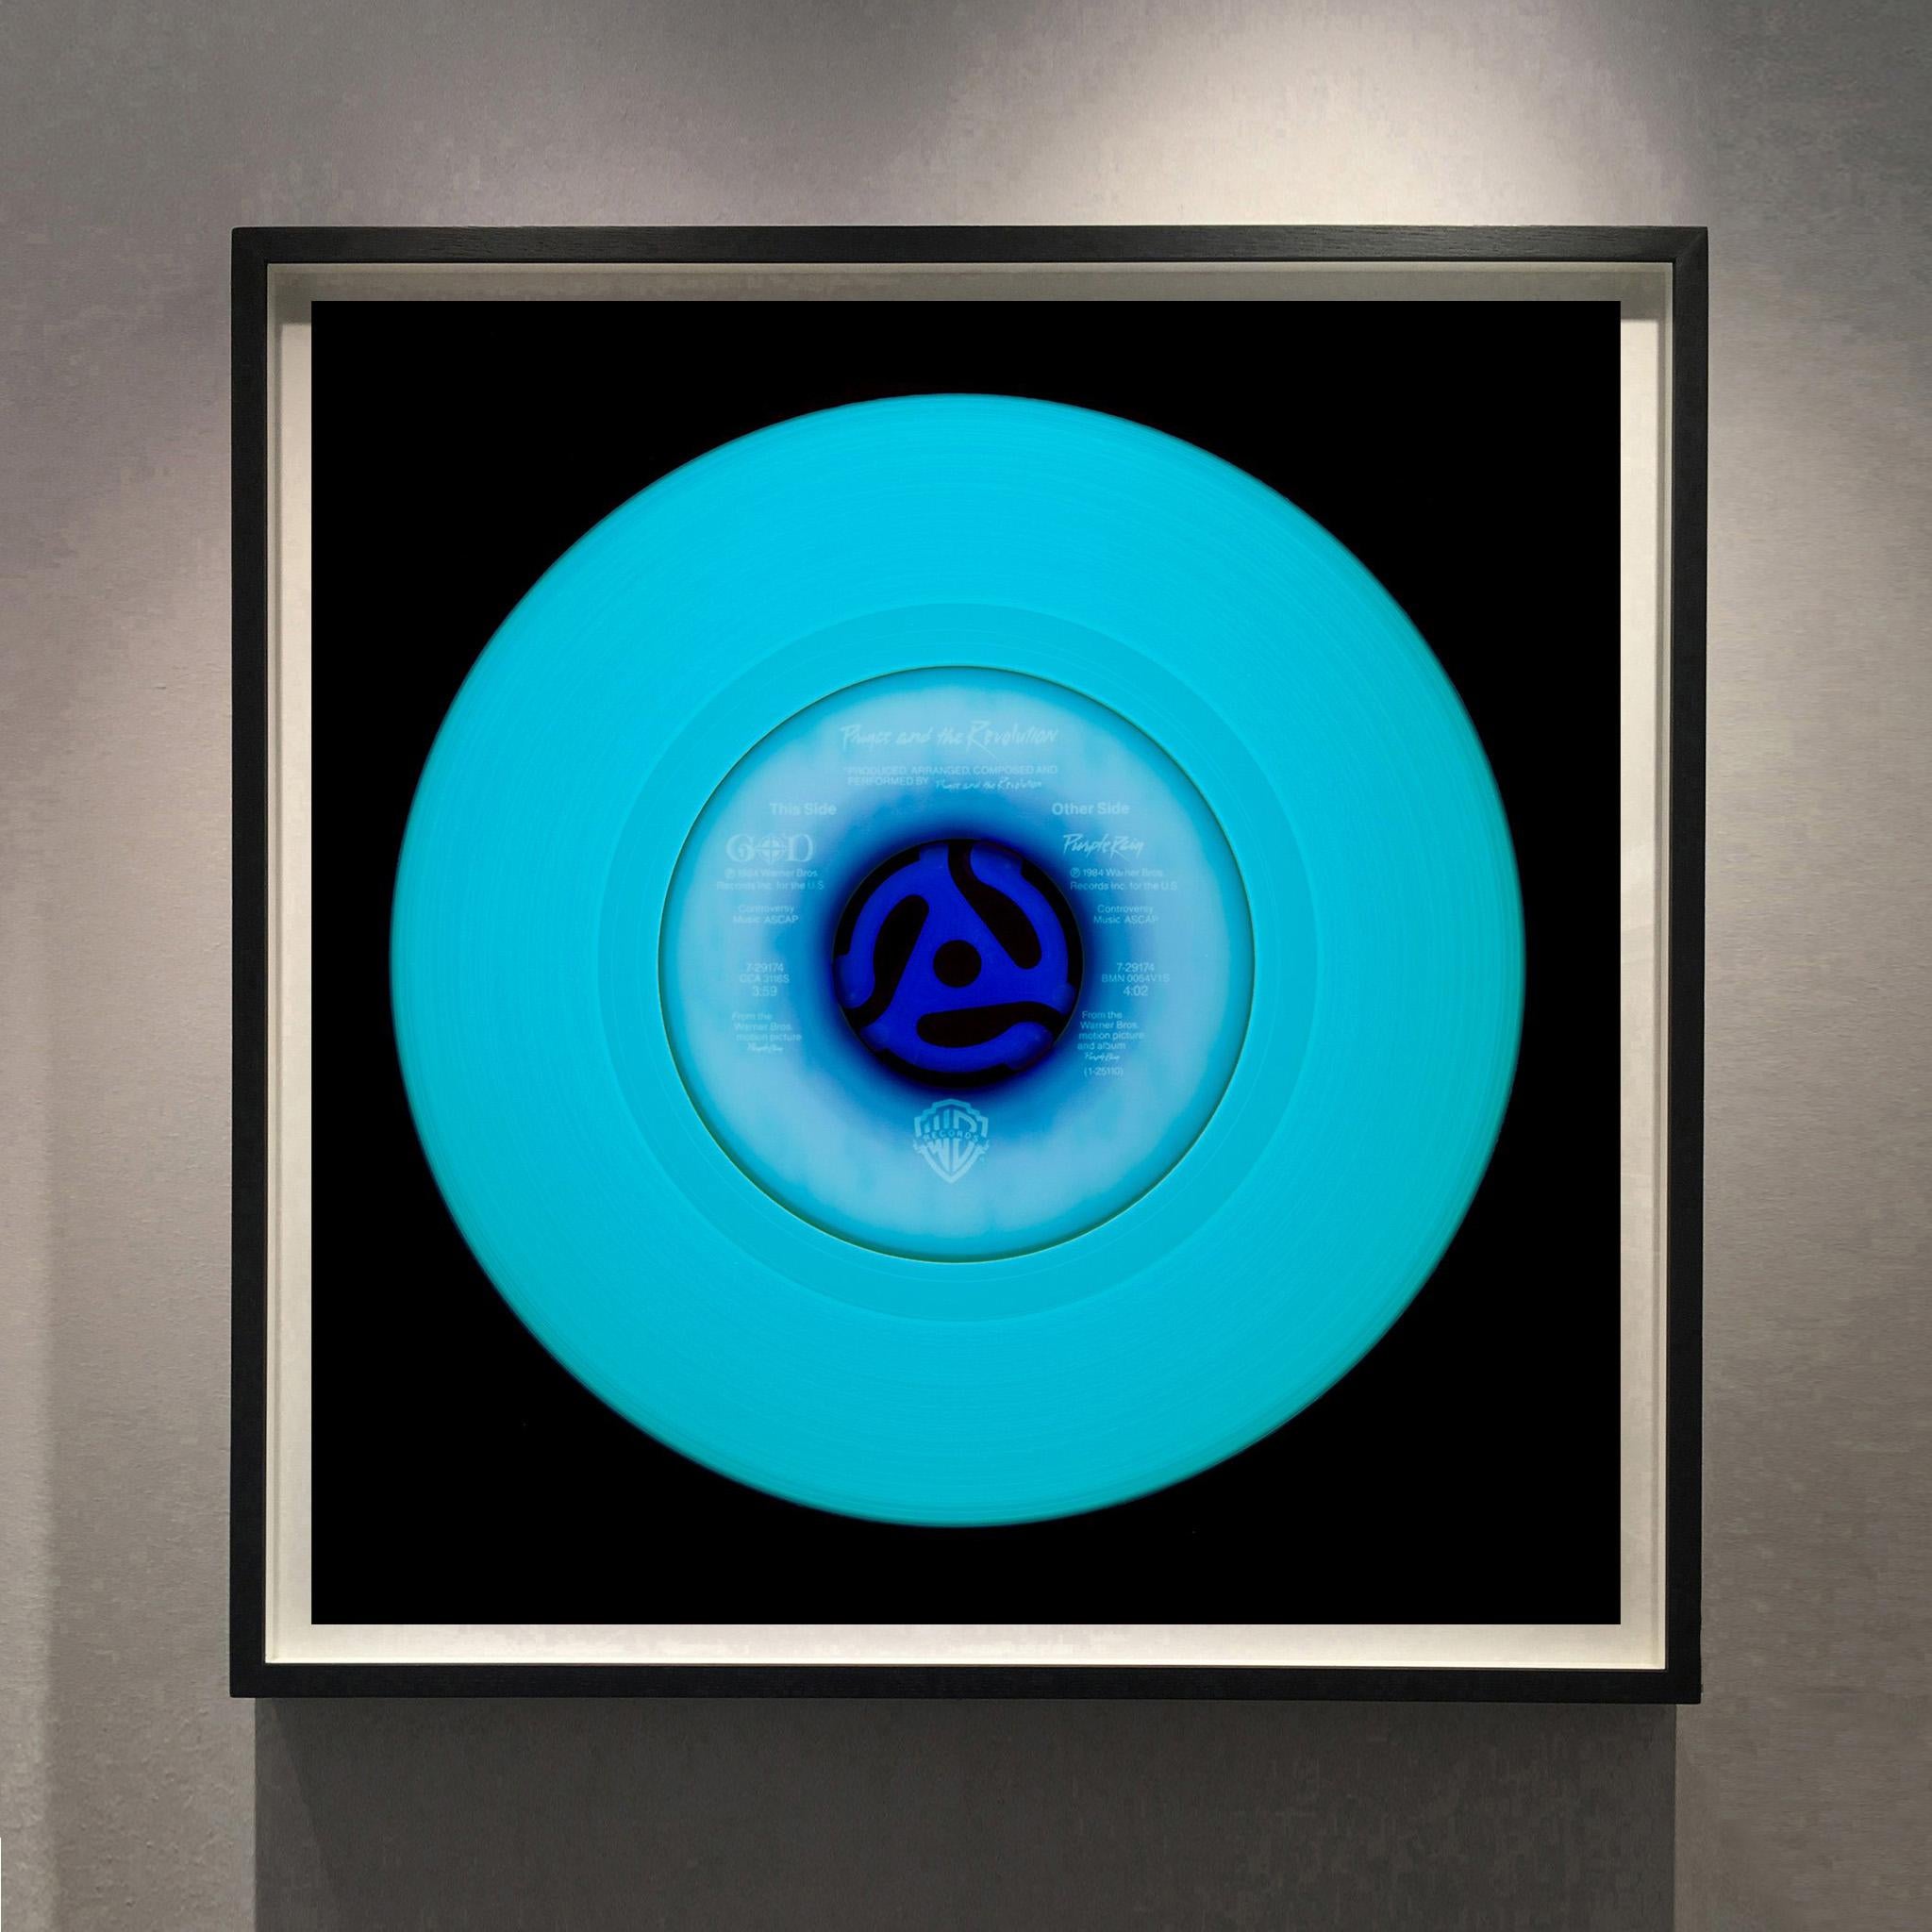 Collection Vinyl, Other Side (bleu) - Photographie Pop Art conceptuelle en couleur - Print de Heidler & Heeps